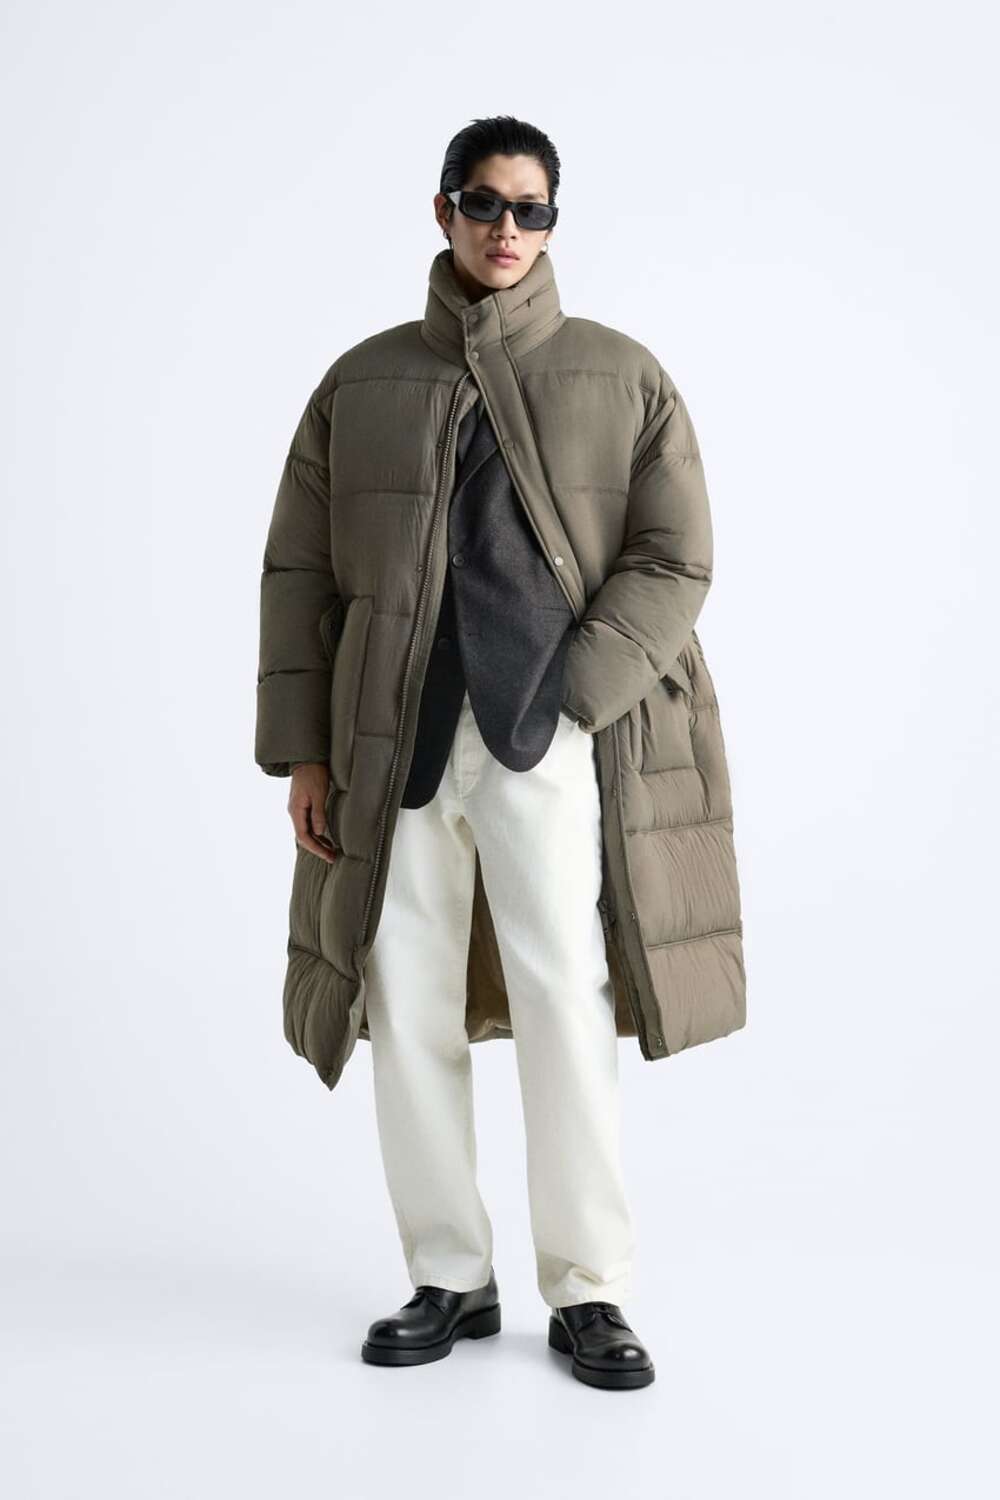 muske jakne za zimu 2023 03 Muške jakne za zimu: 7 najmodernijih modela, prema izboru naših stilista